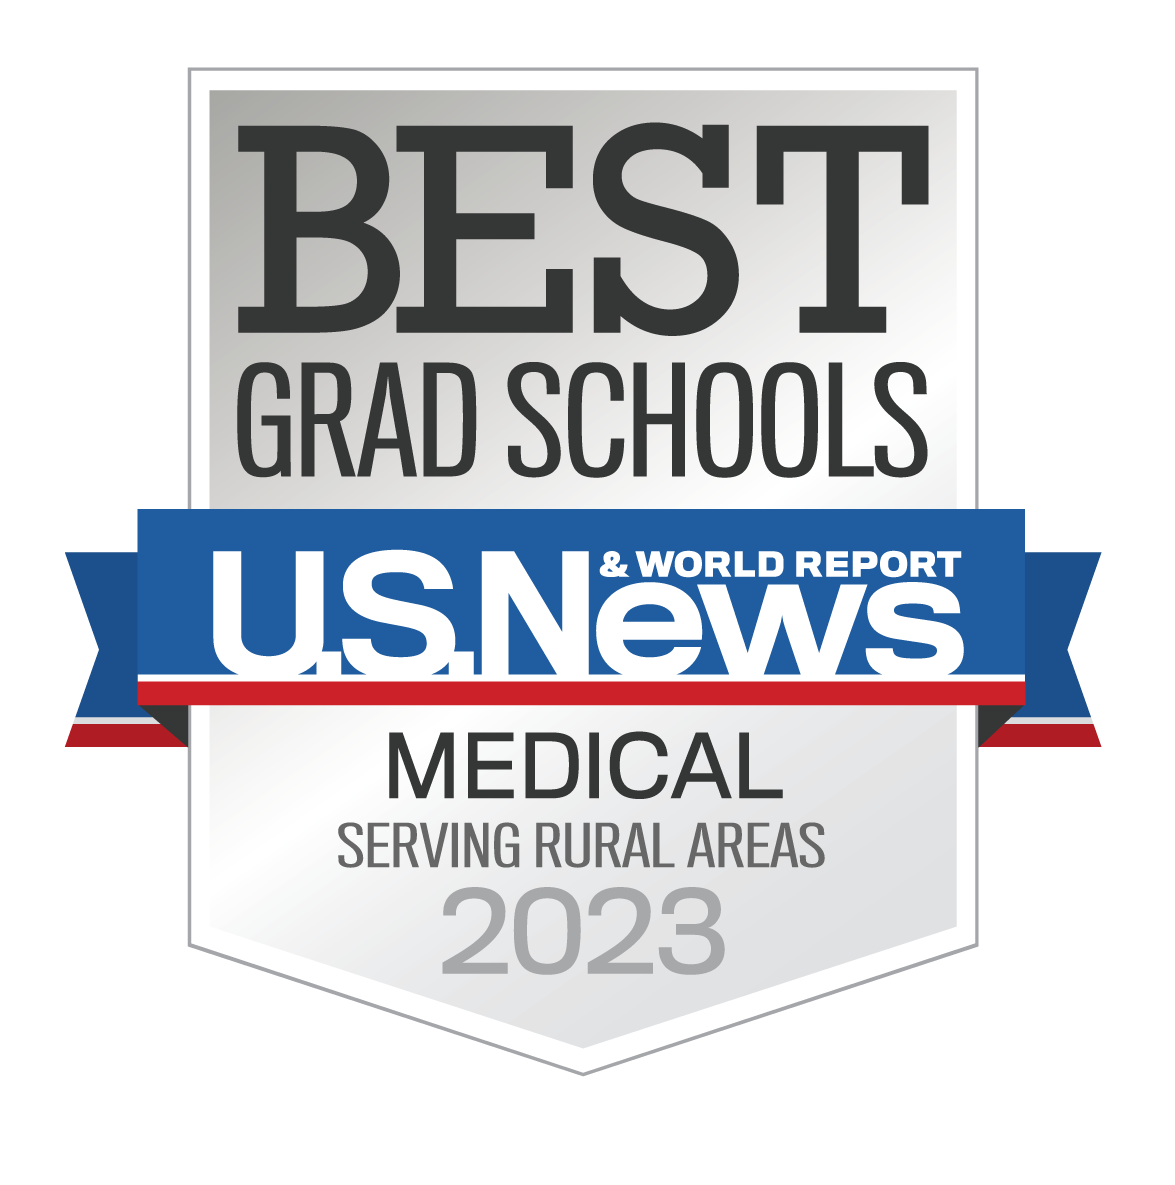 Best Grad Schools U.S. News & World Report Medical Serving Rural Areas 2023